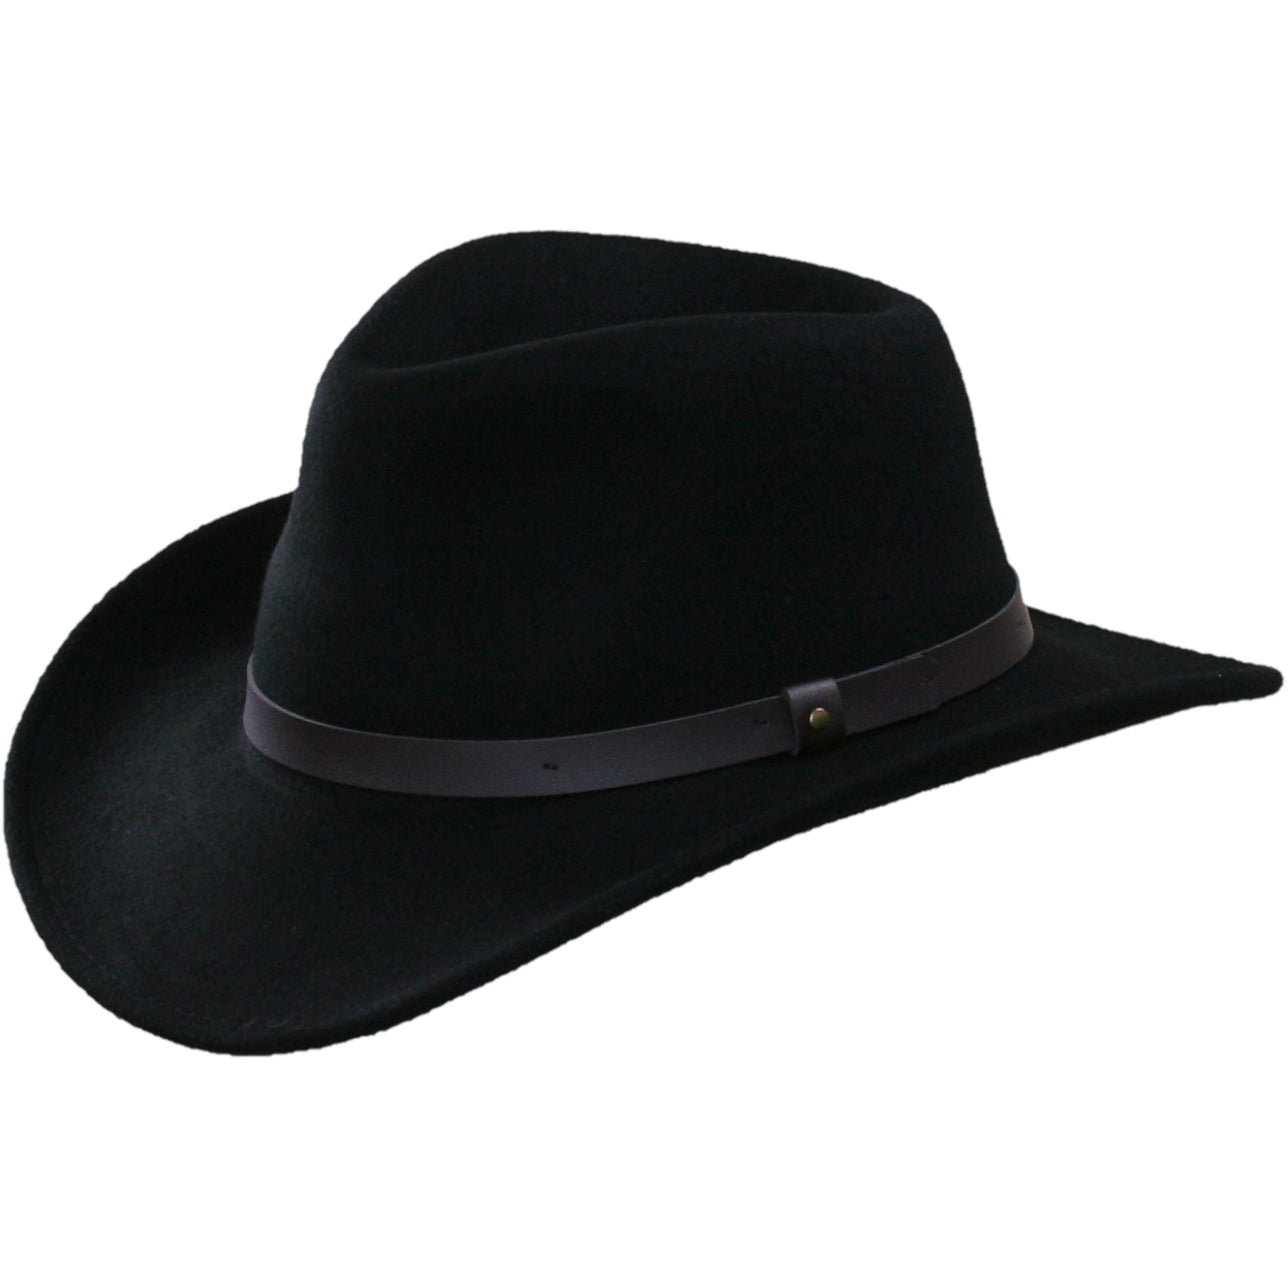 Broner Felt Outback Leather-Like Band Hat - Black